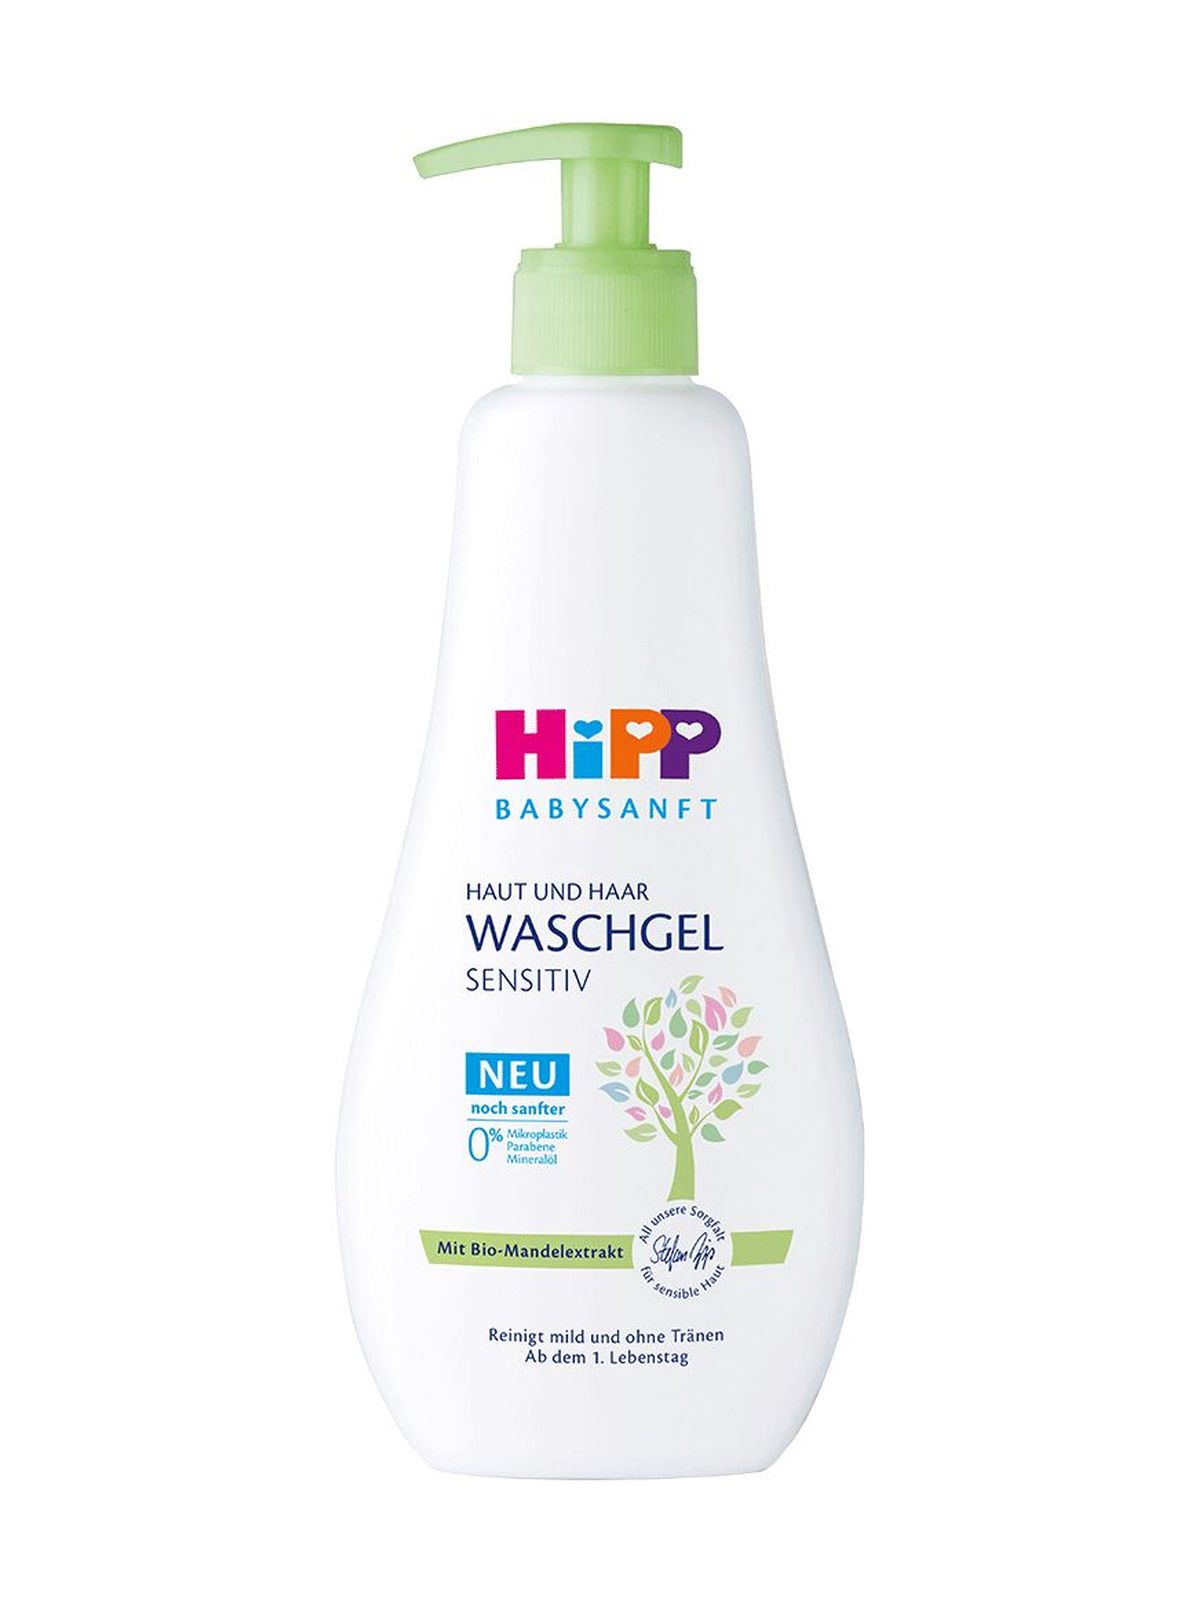 Детский гель для купания Hipp Babysanft Sensitiv Haut und Haar Waschgel, 400 мл